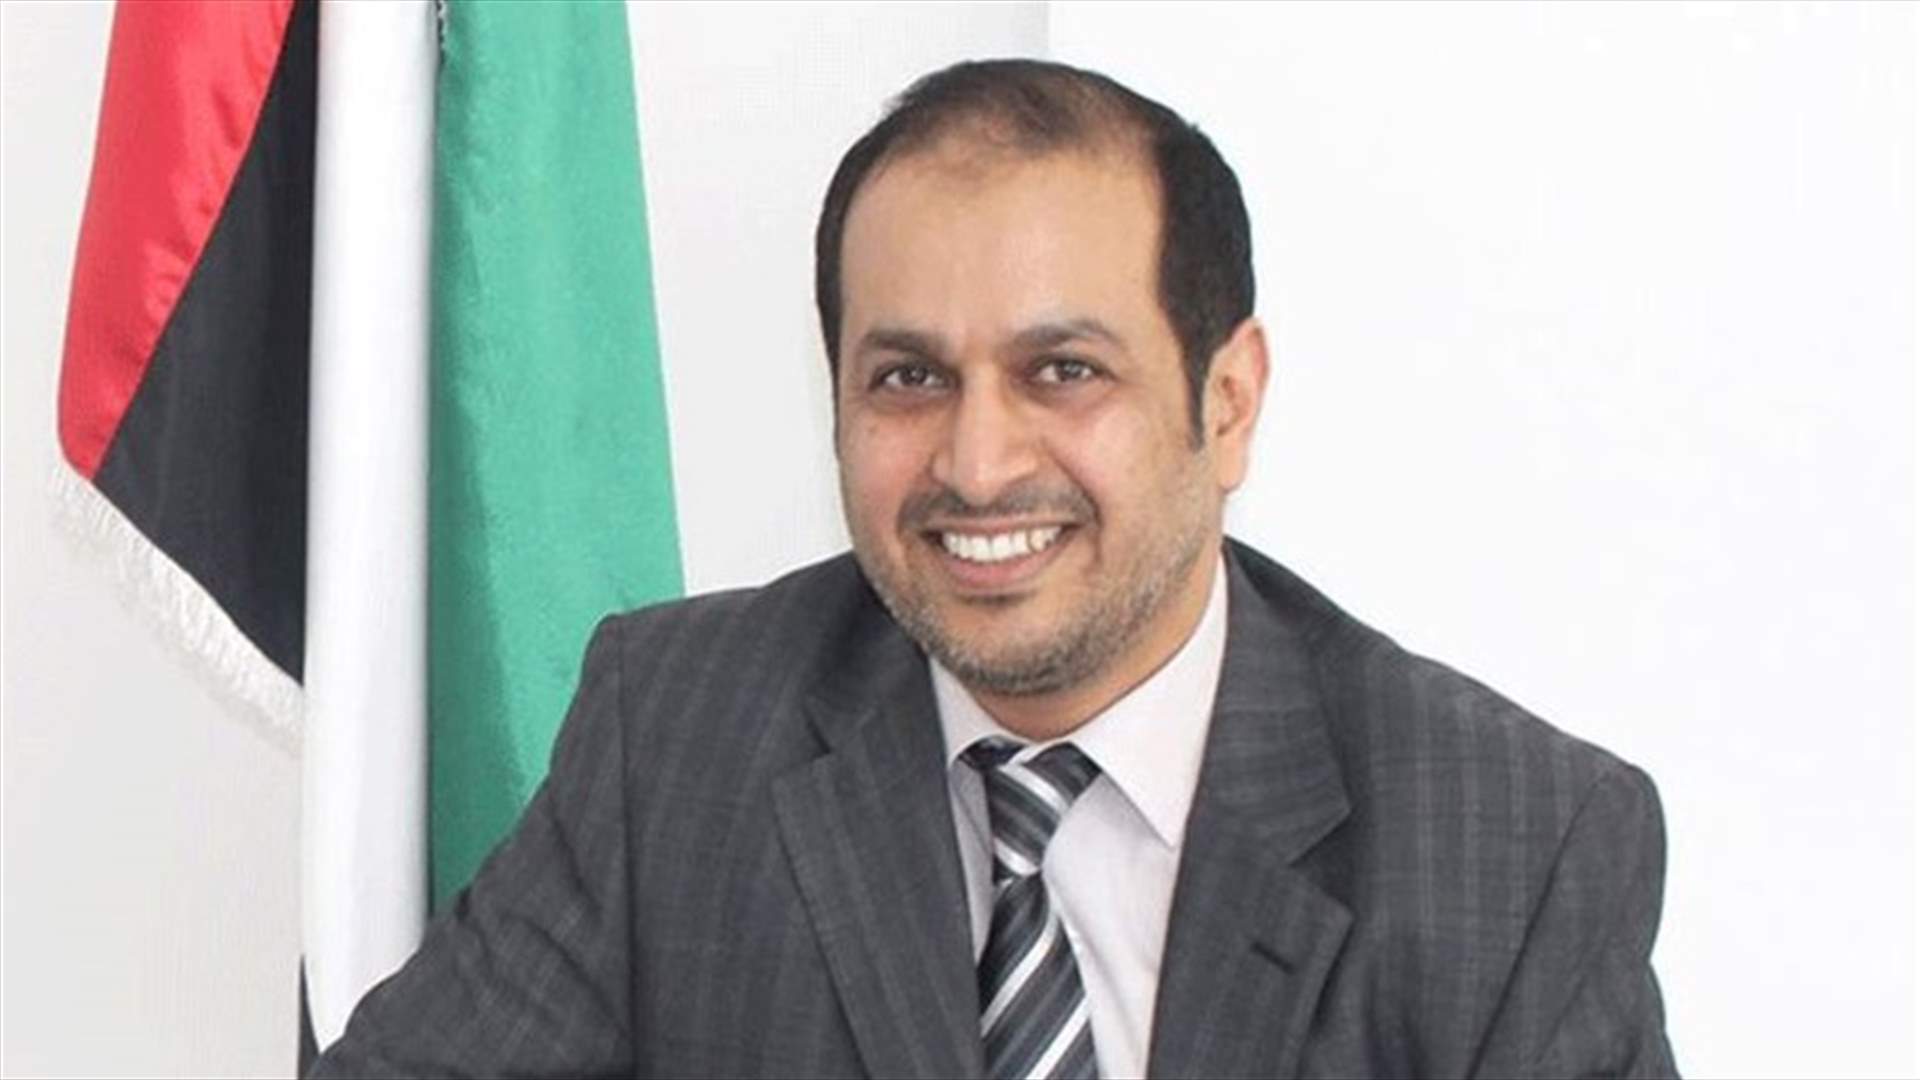 UAE Ambassador to LBCI: We are working on lifting UAE travel ban on Lebanon